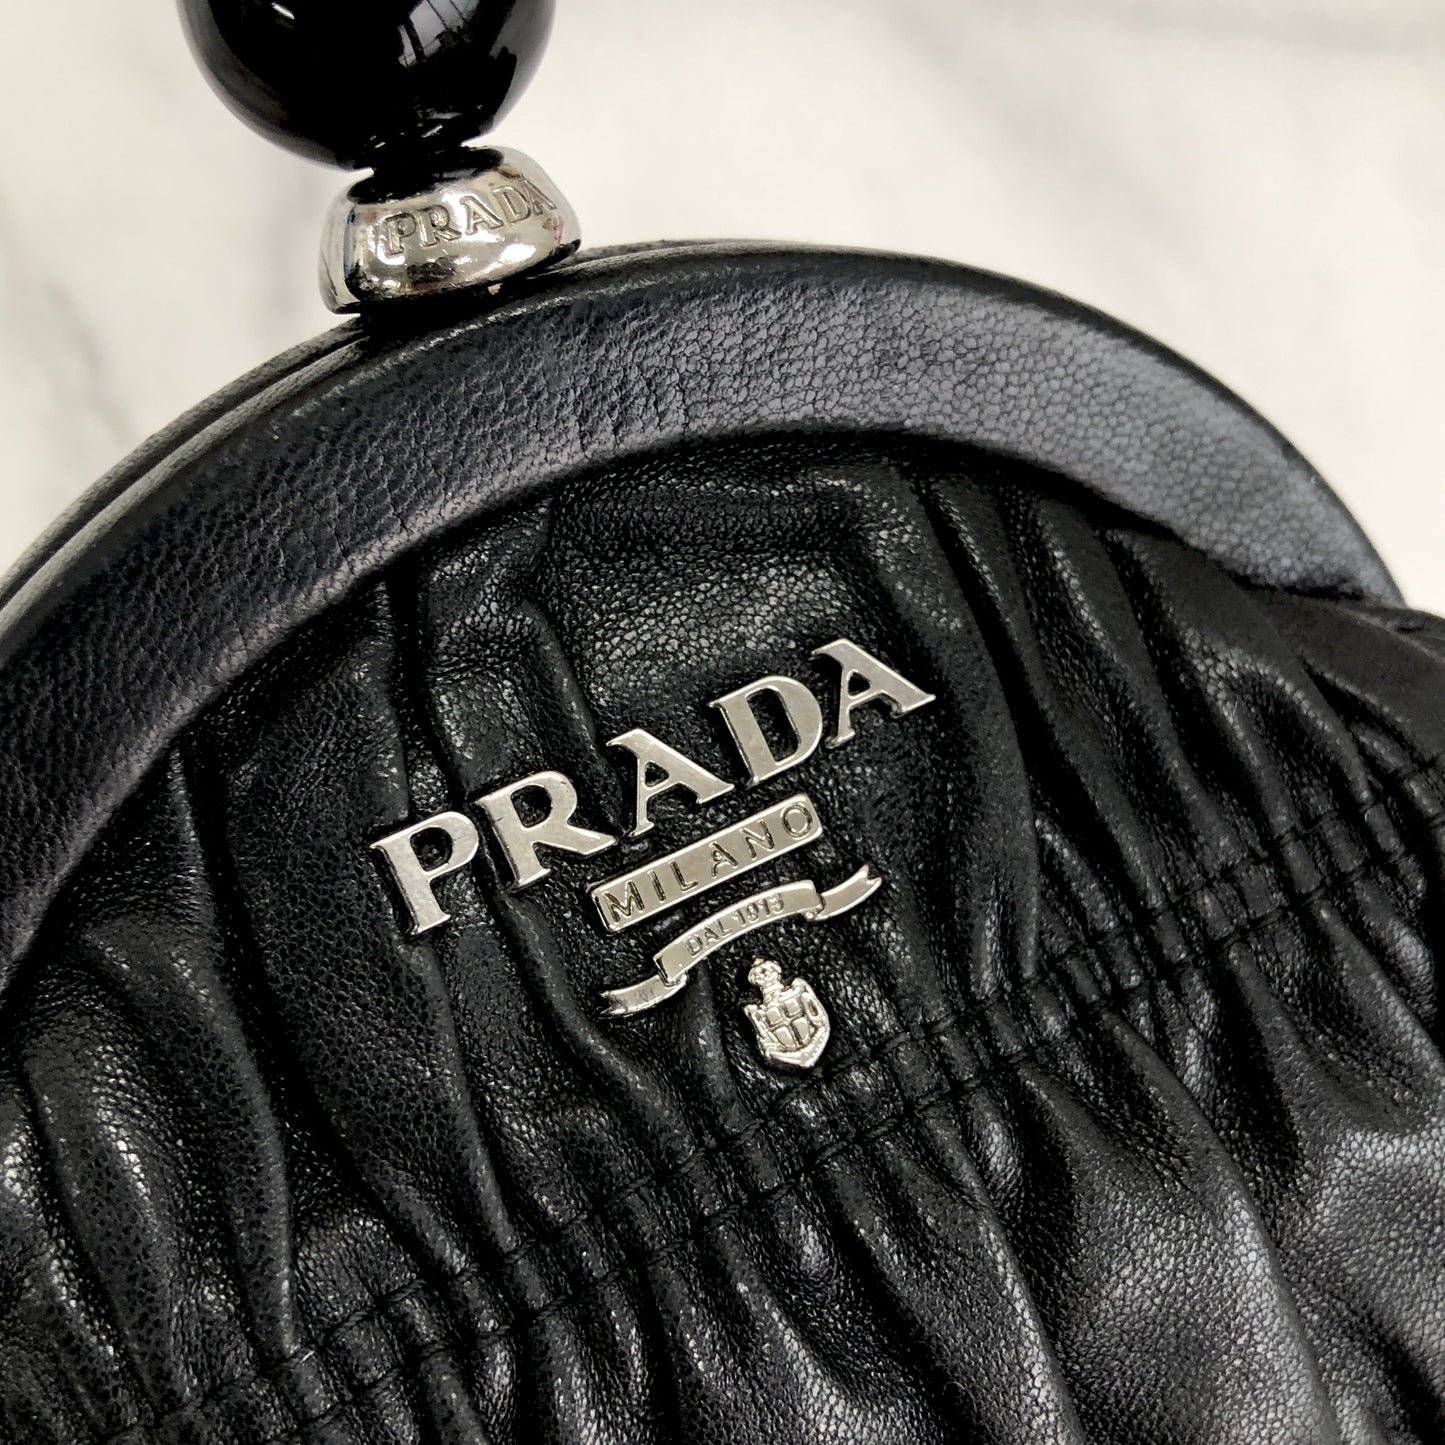 PRADA Clasp Coin purse stone gather leather black rbxcjb